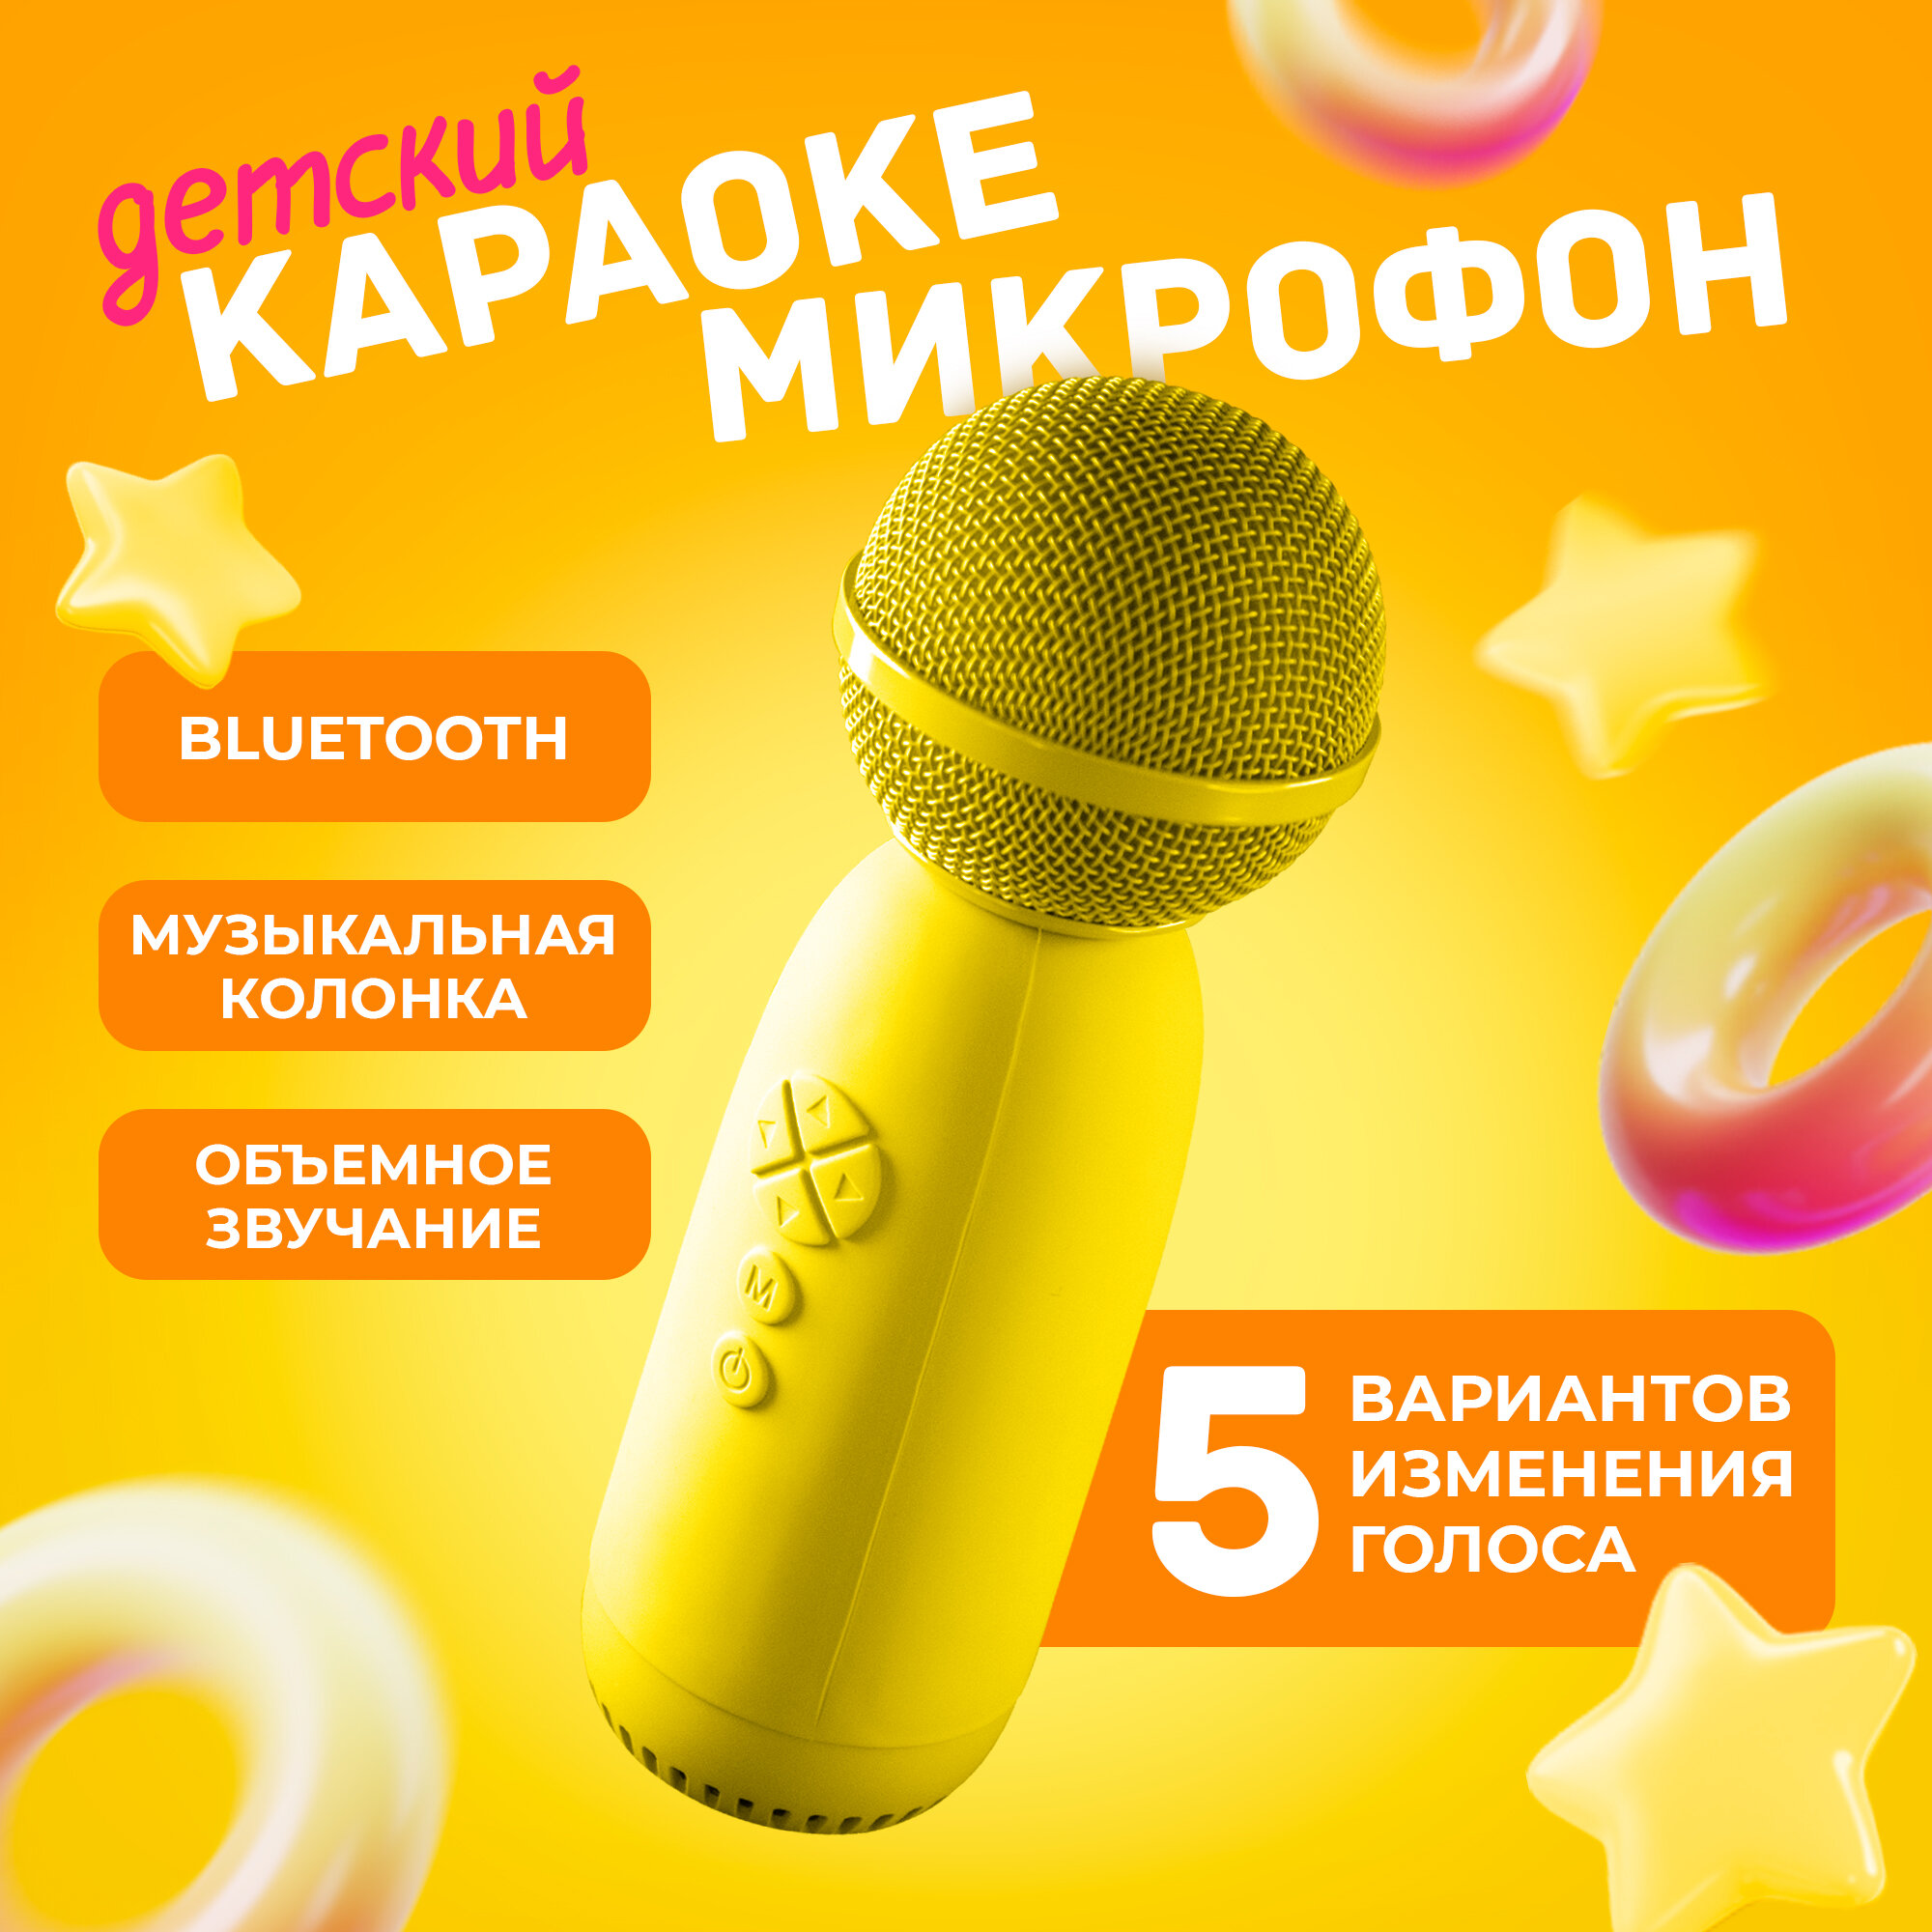 Беспроводной микрофон караоке для телефона, AMFOX, ASP-070, домашнее караоке, детское, студийная колонка для пения, блютуз, желтый